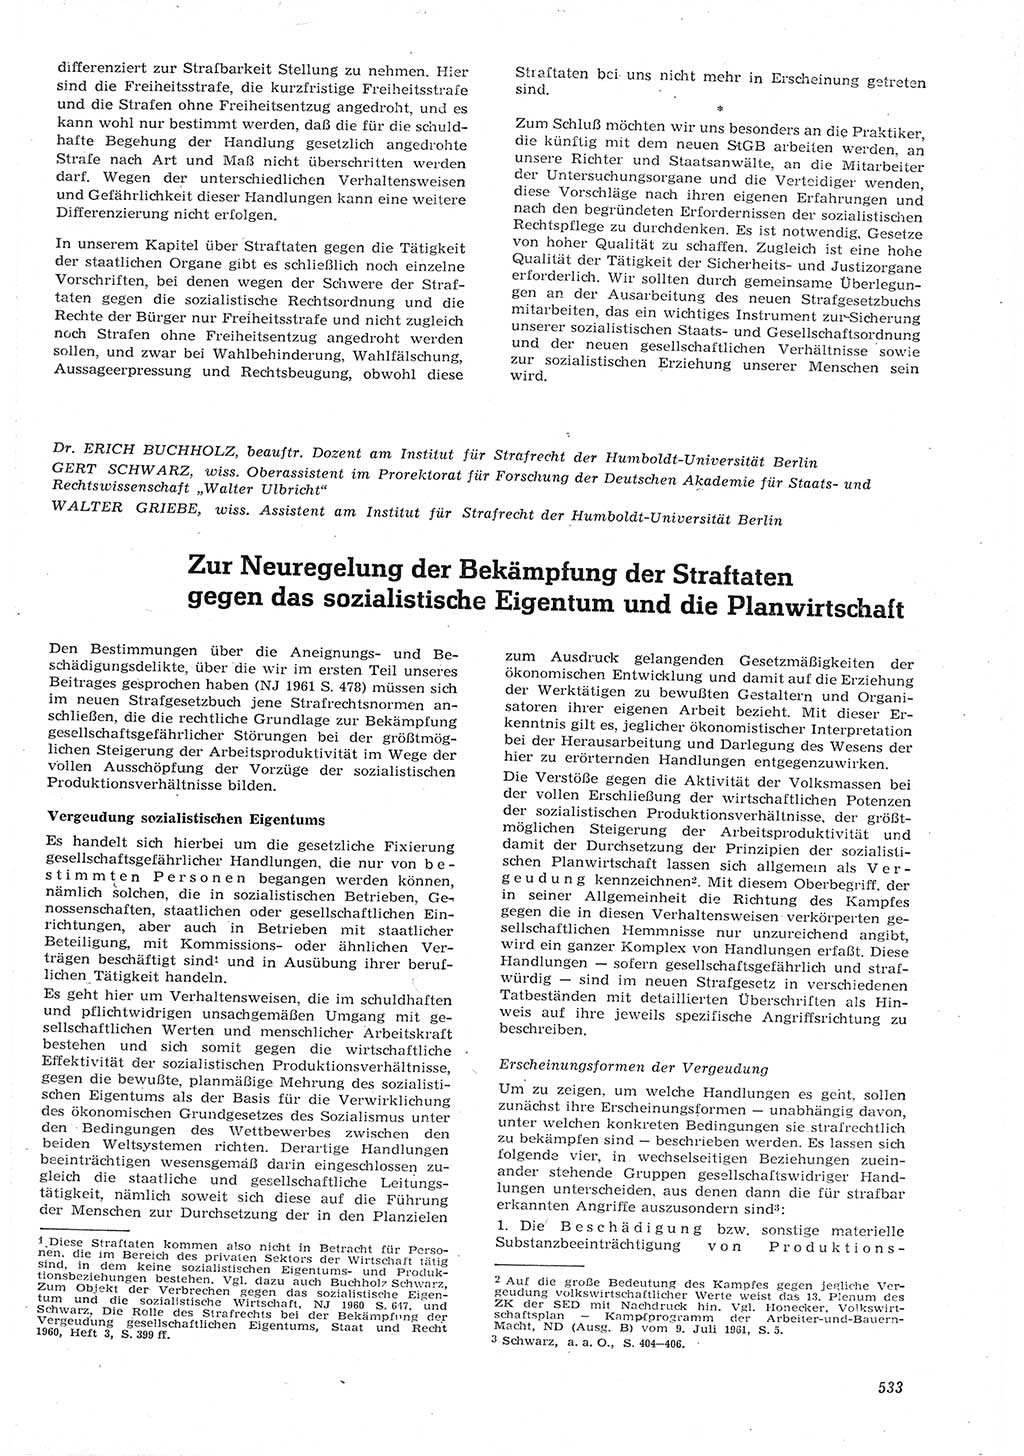 Neue Justiz (NJ), Zeitschrift für Recht und Rechtswissenschaft [Deutsche Demokratische Republik (DDR)], 15. Jahrgang 1961, Seite 533 (NJ DDR 1961, S. 533)